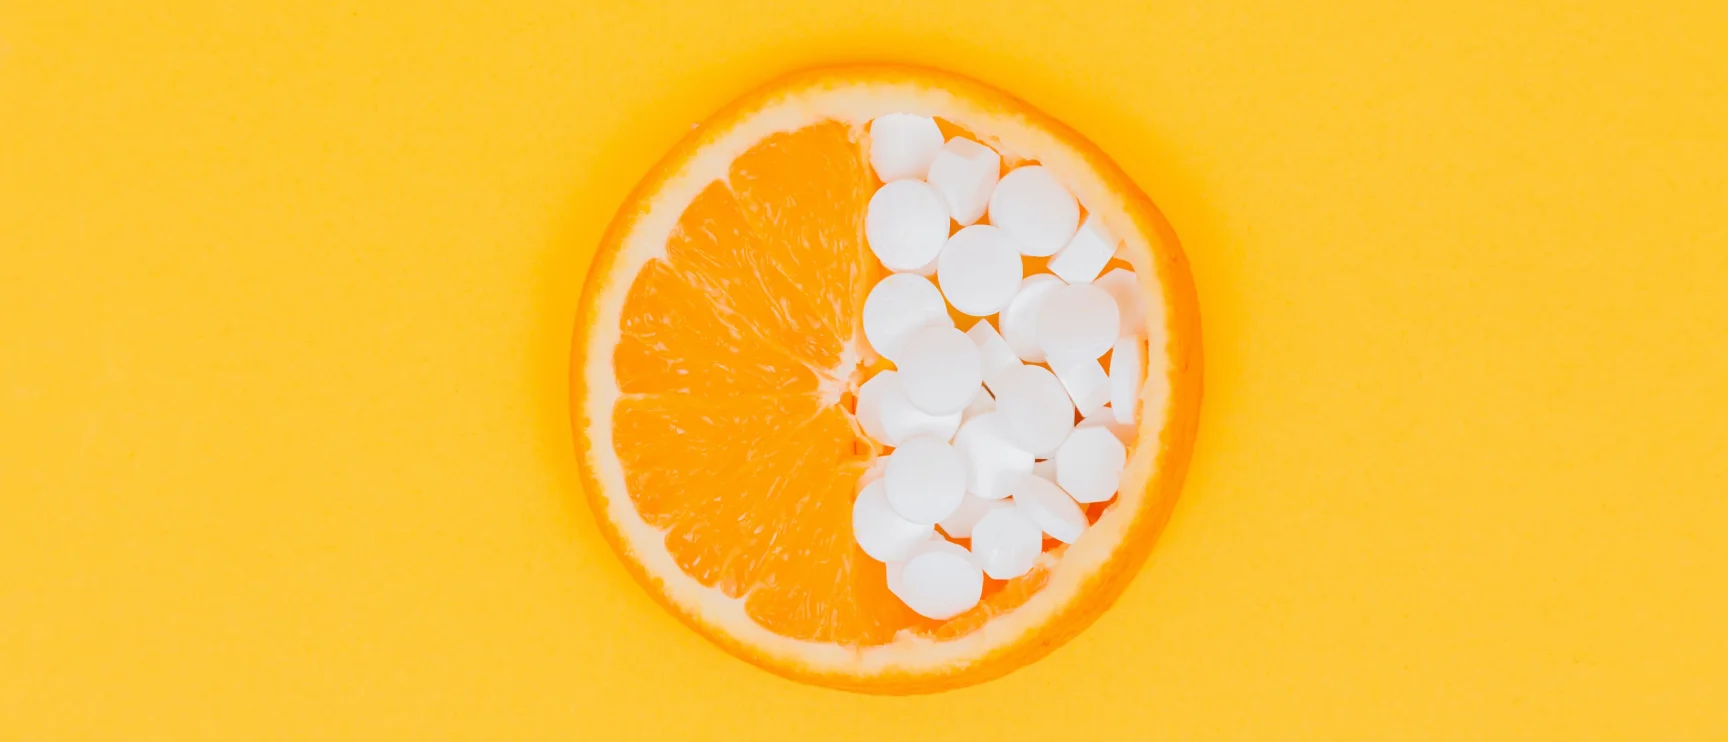 Orange half filled with supplement pills